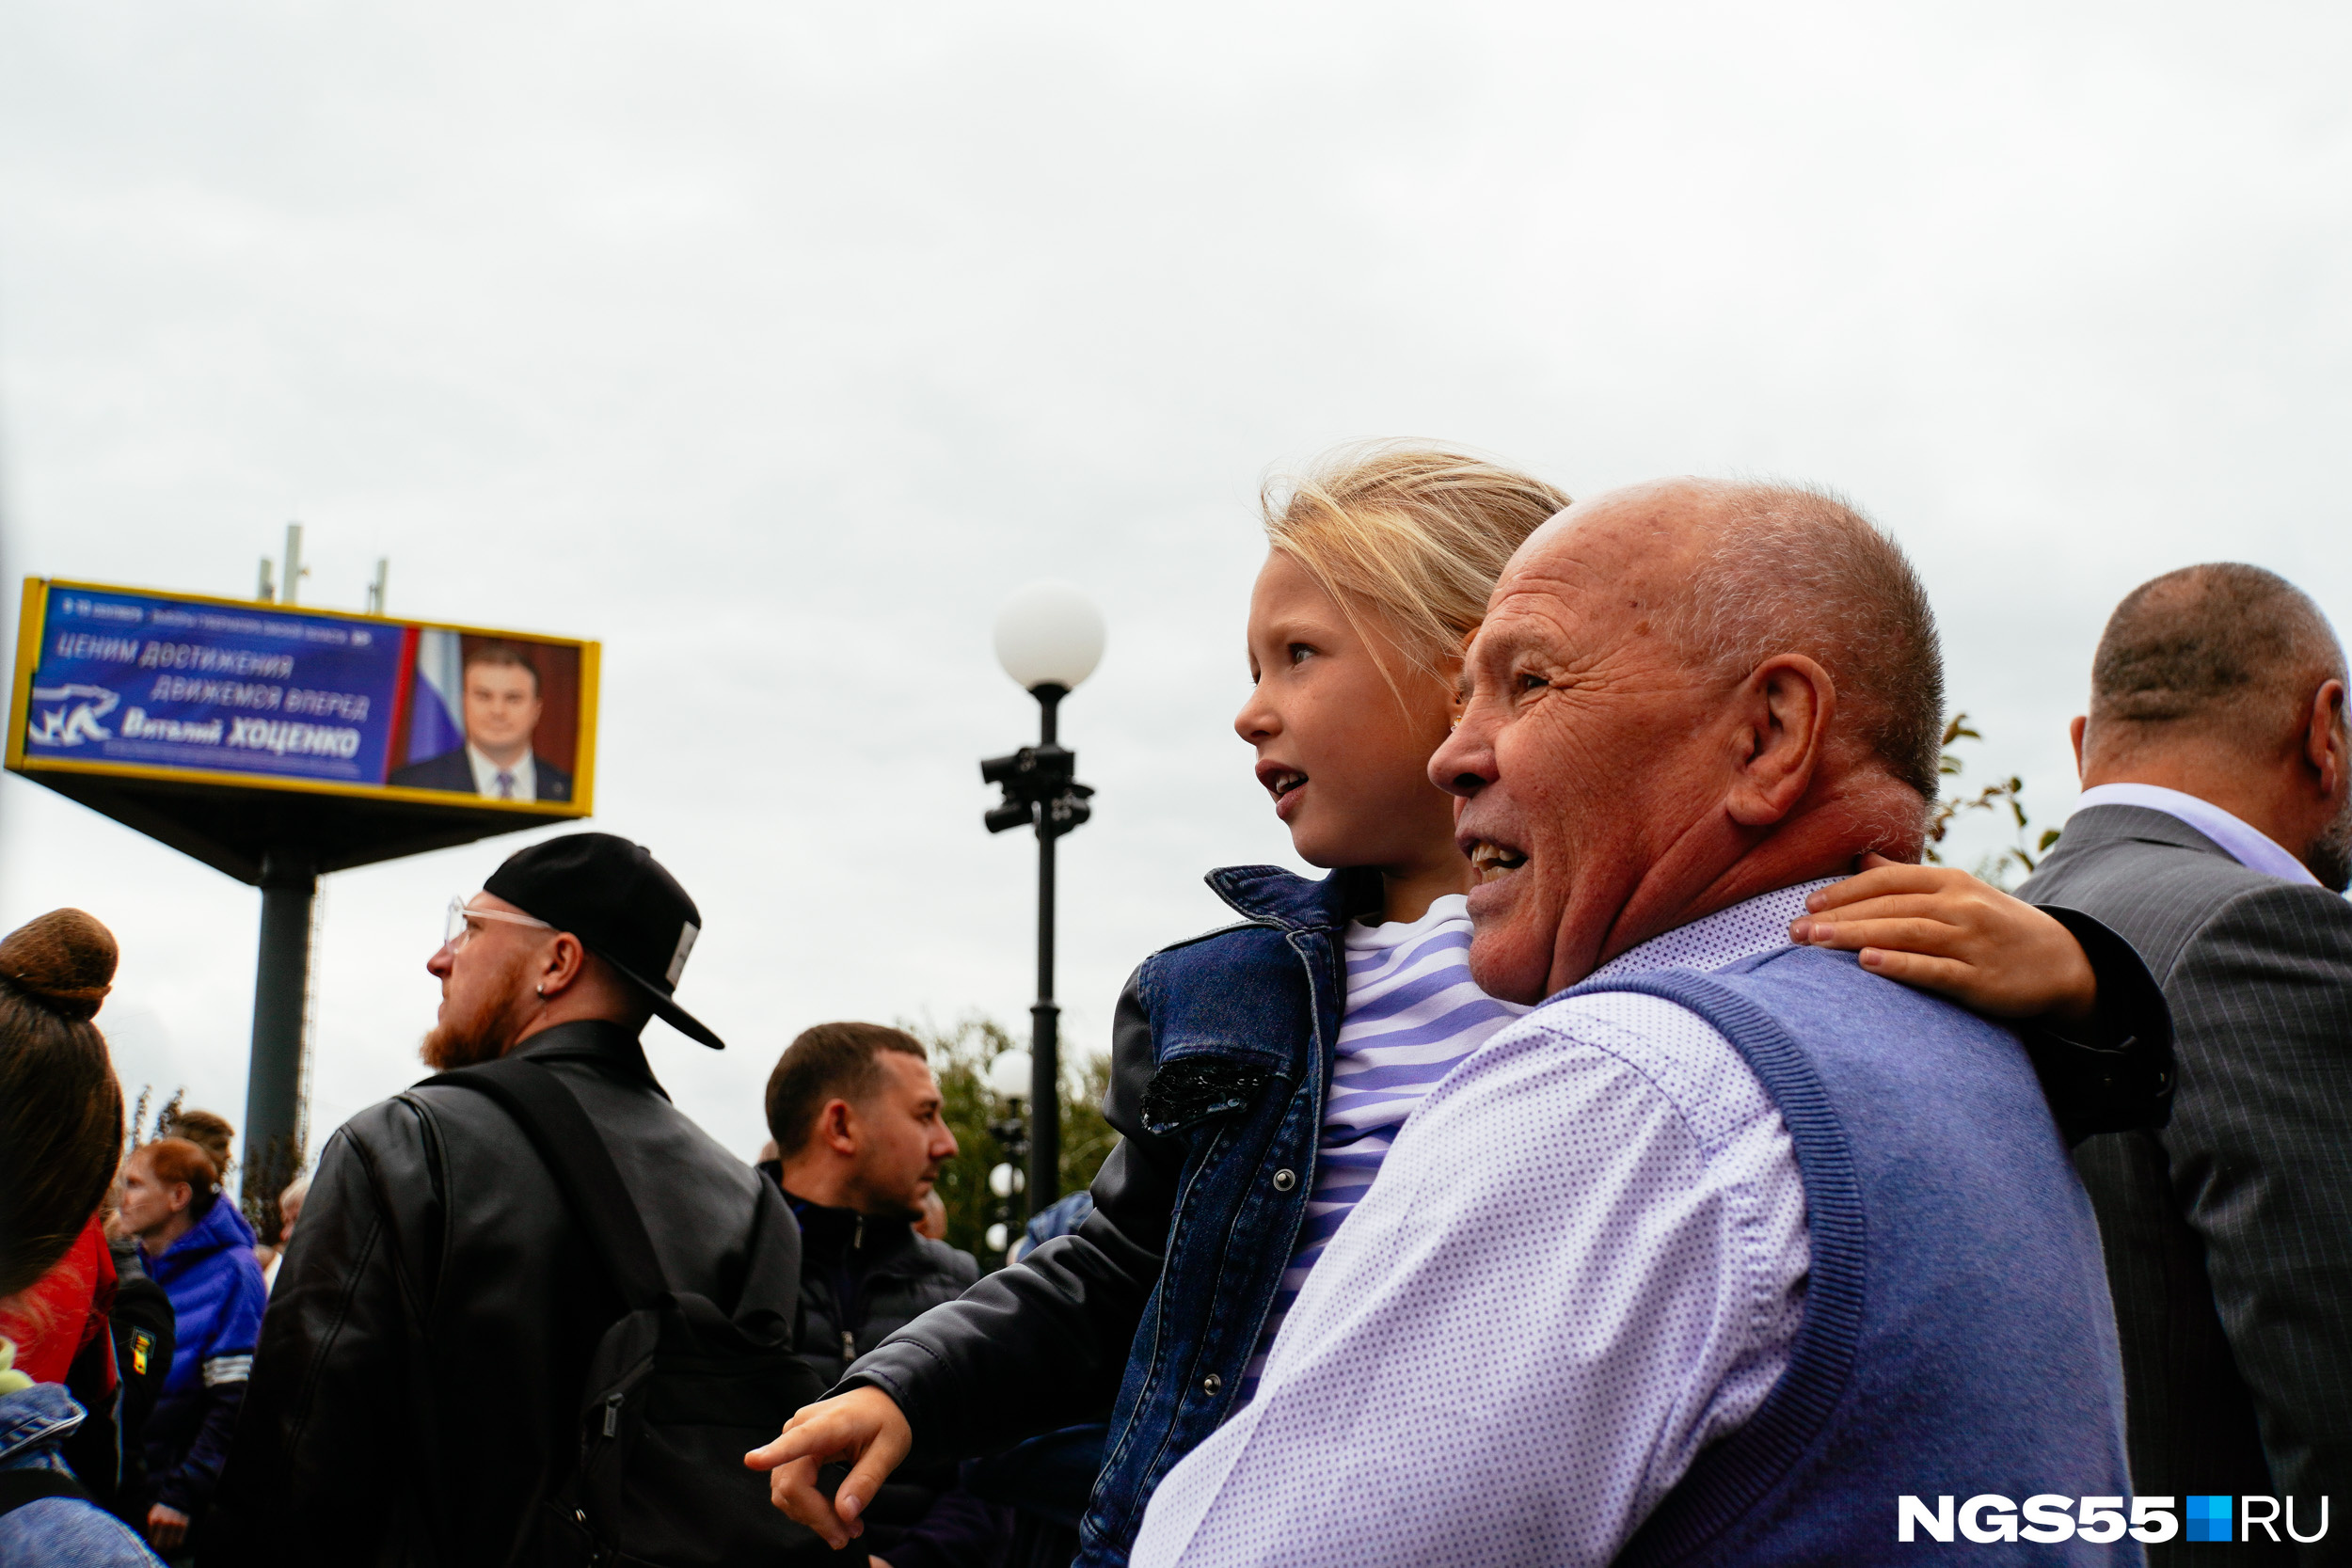 Дочь Алексея Тищенко сразу узнала бюст, который посвящен ее отцу. Девочка с восторгом воскликнула: «Это папа! Папа!» На этом снимке она сидит на руках у дедушки